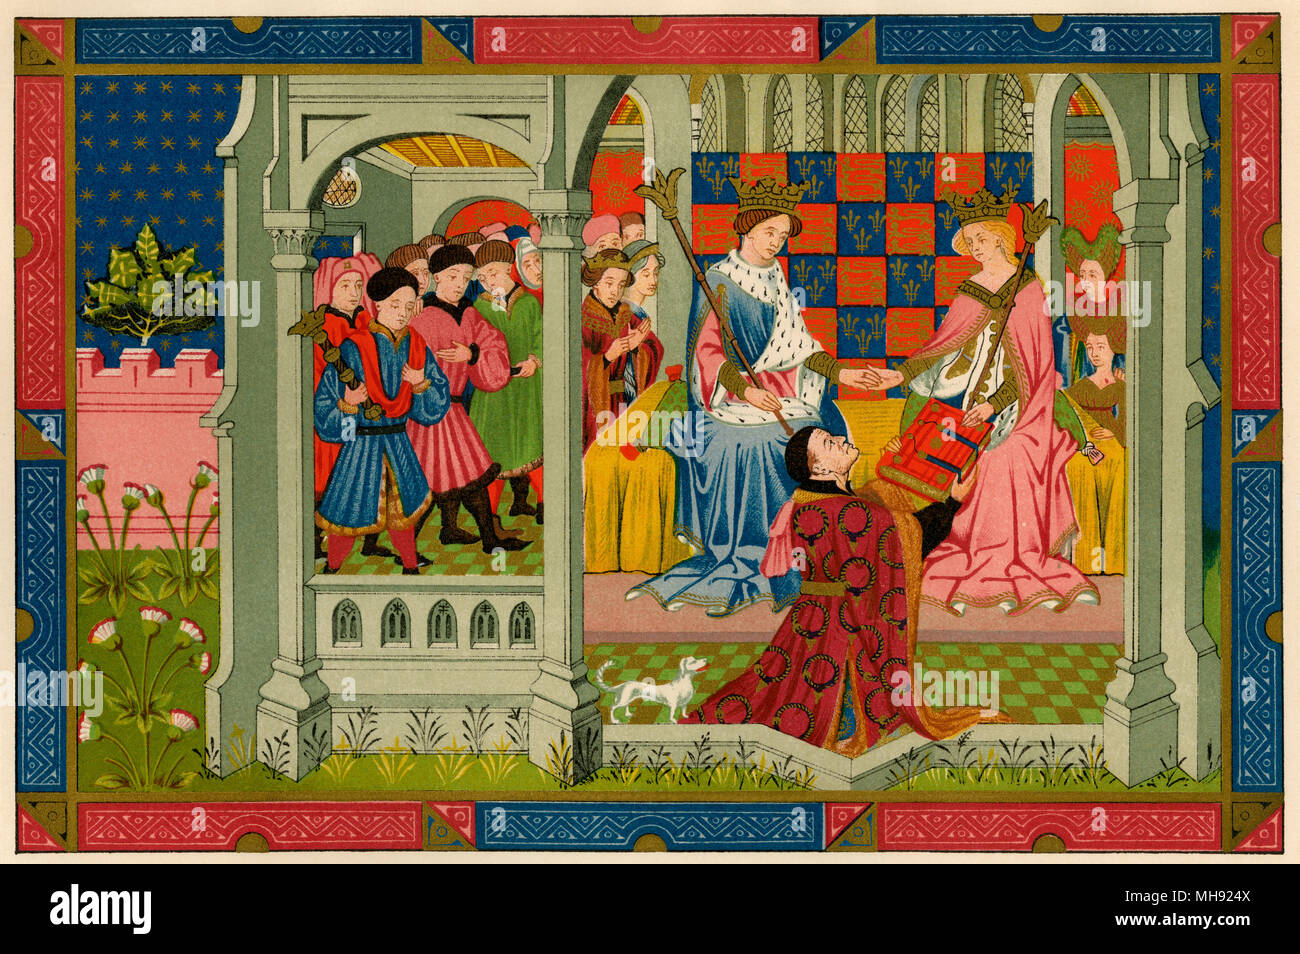 Heinrich VI. und seine Königin, Margaret von Anjou, erhalten ein Buch von John Talbot, Graf von Shrewsbury, 1400. Gedruckte farbige Lithographie Stockfoto